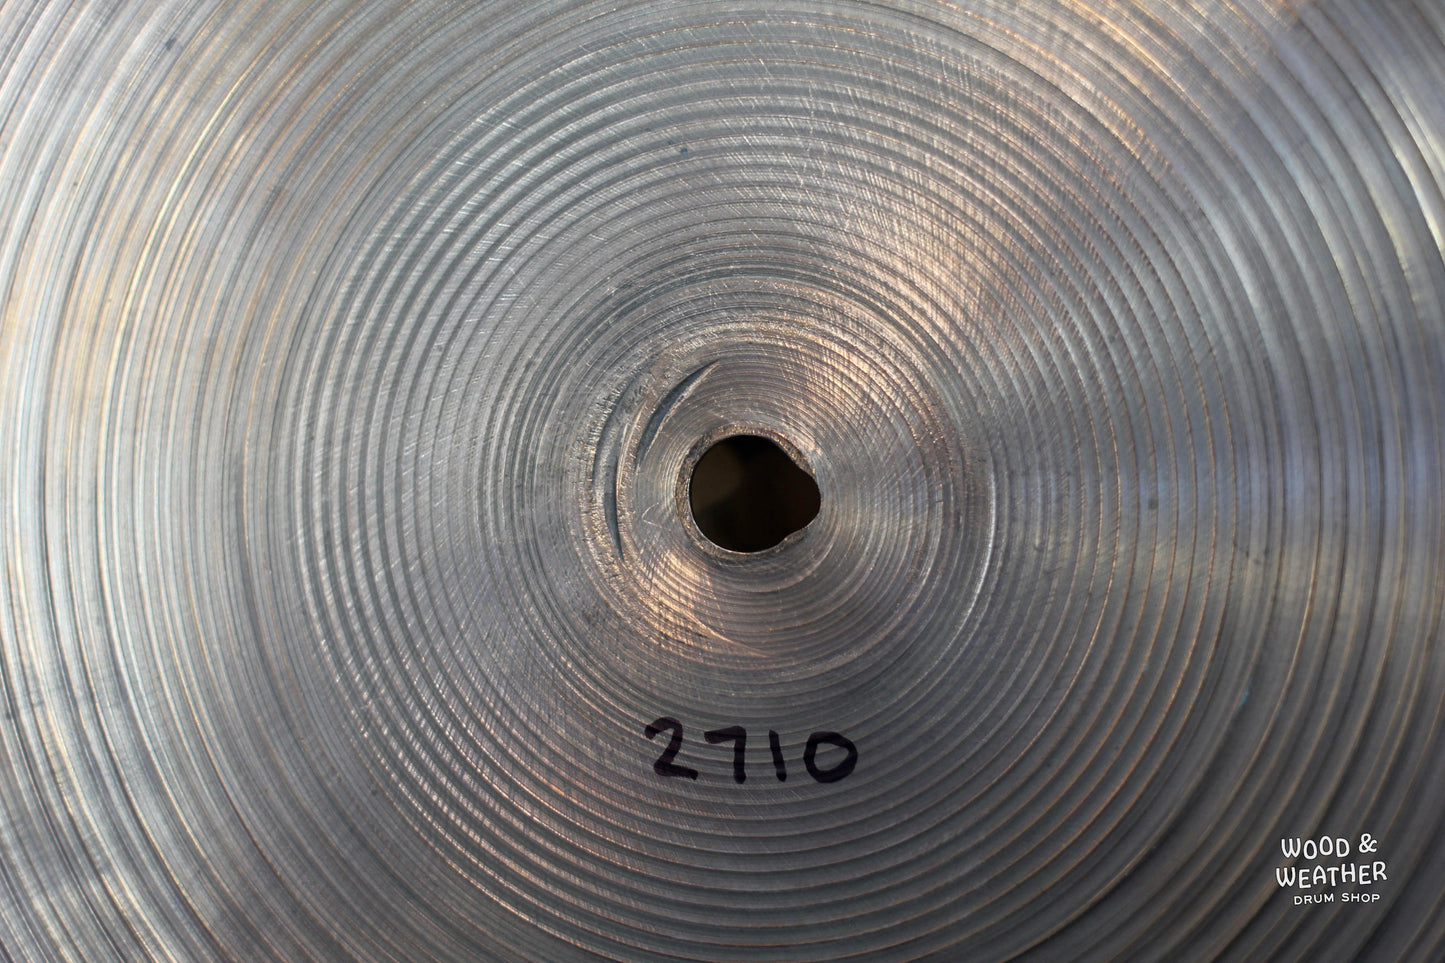 1978-82 A. Zildjian 20" "Hollow Logo" Flat Top Ride Cymbal 2710g